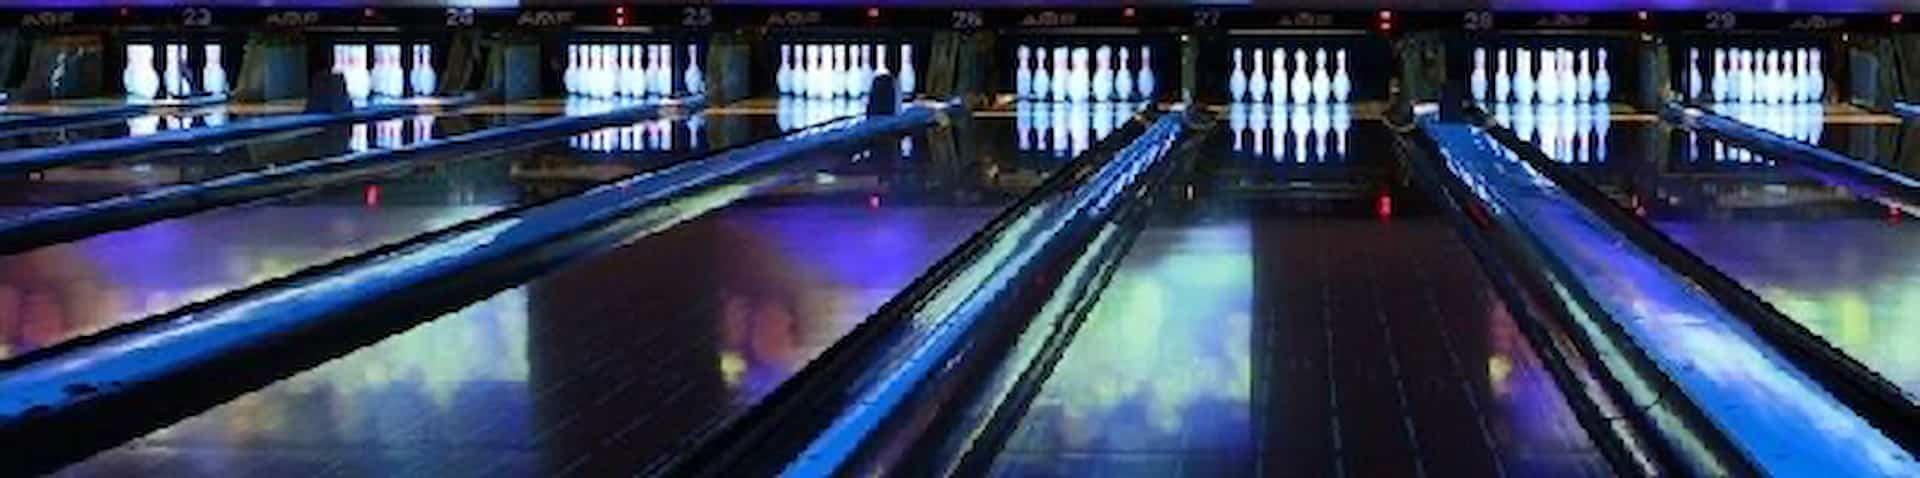 bowling lanes 